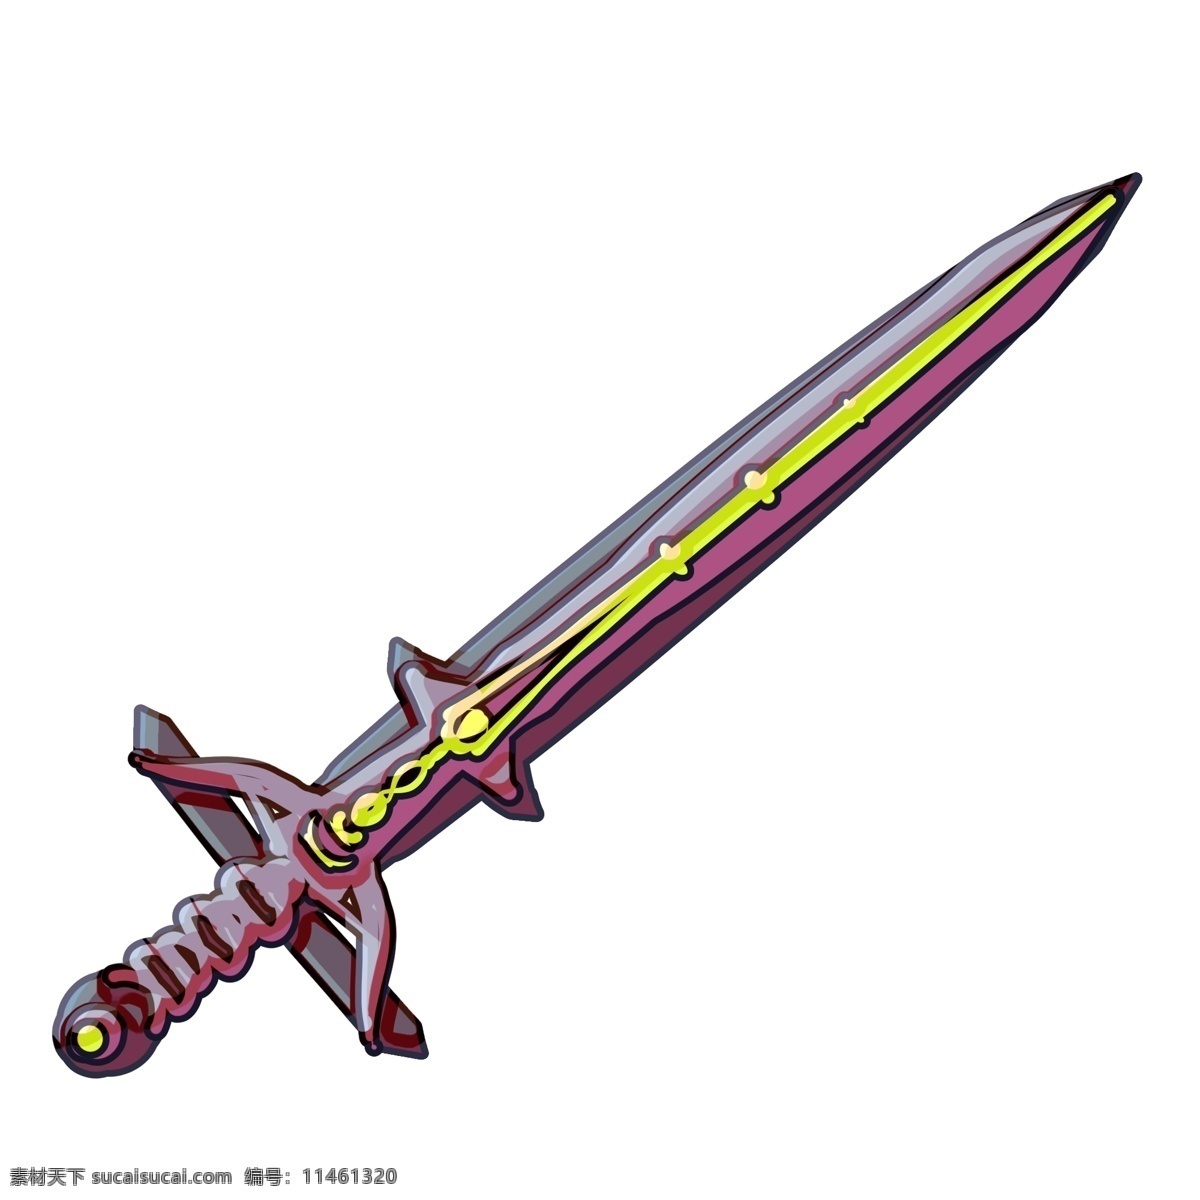 立体 宝剑 装饰 插画 立体宝剑 粉色的宝剑 漂亮的宝剑 创意宝剑 卡通宝剑 宝剑装饰 宝剑插画